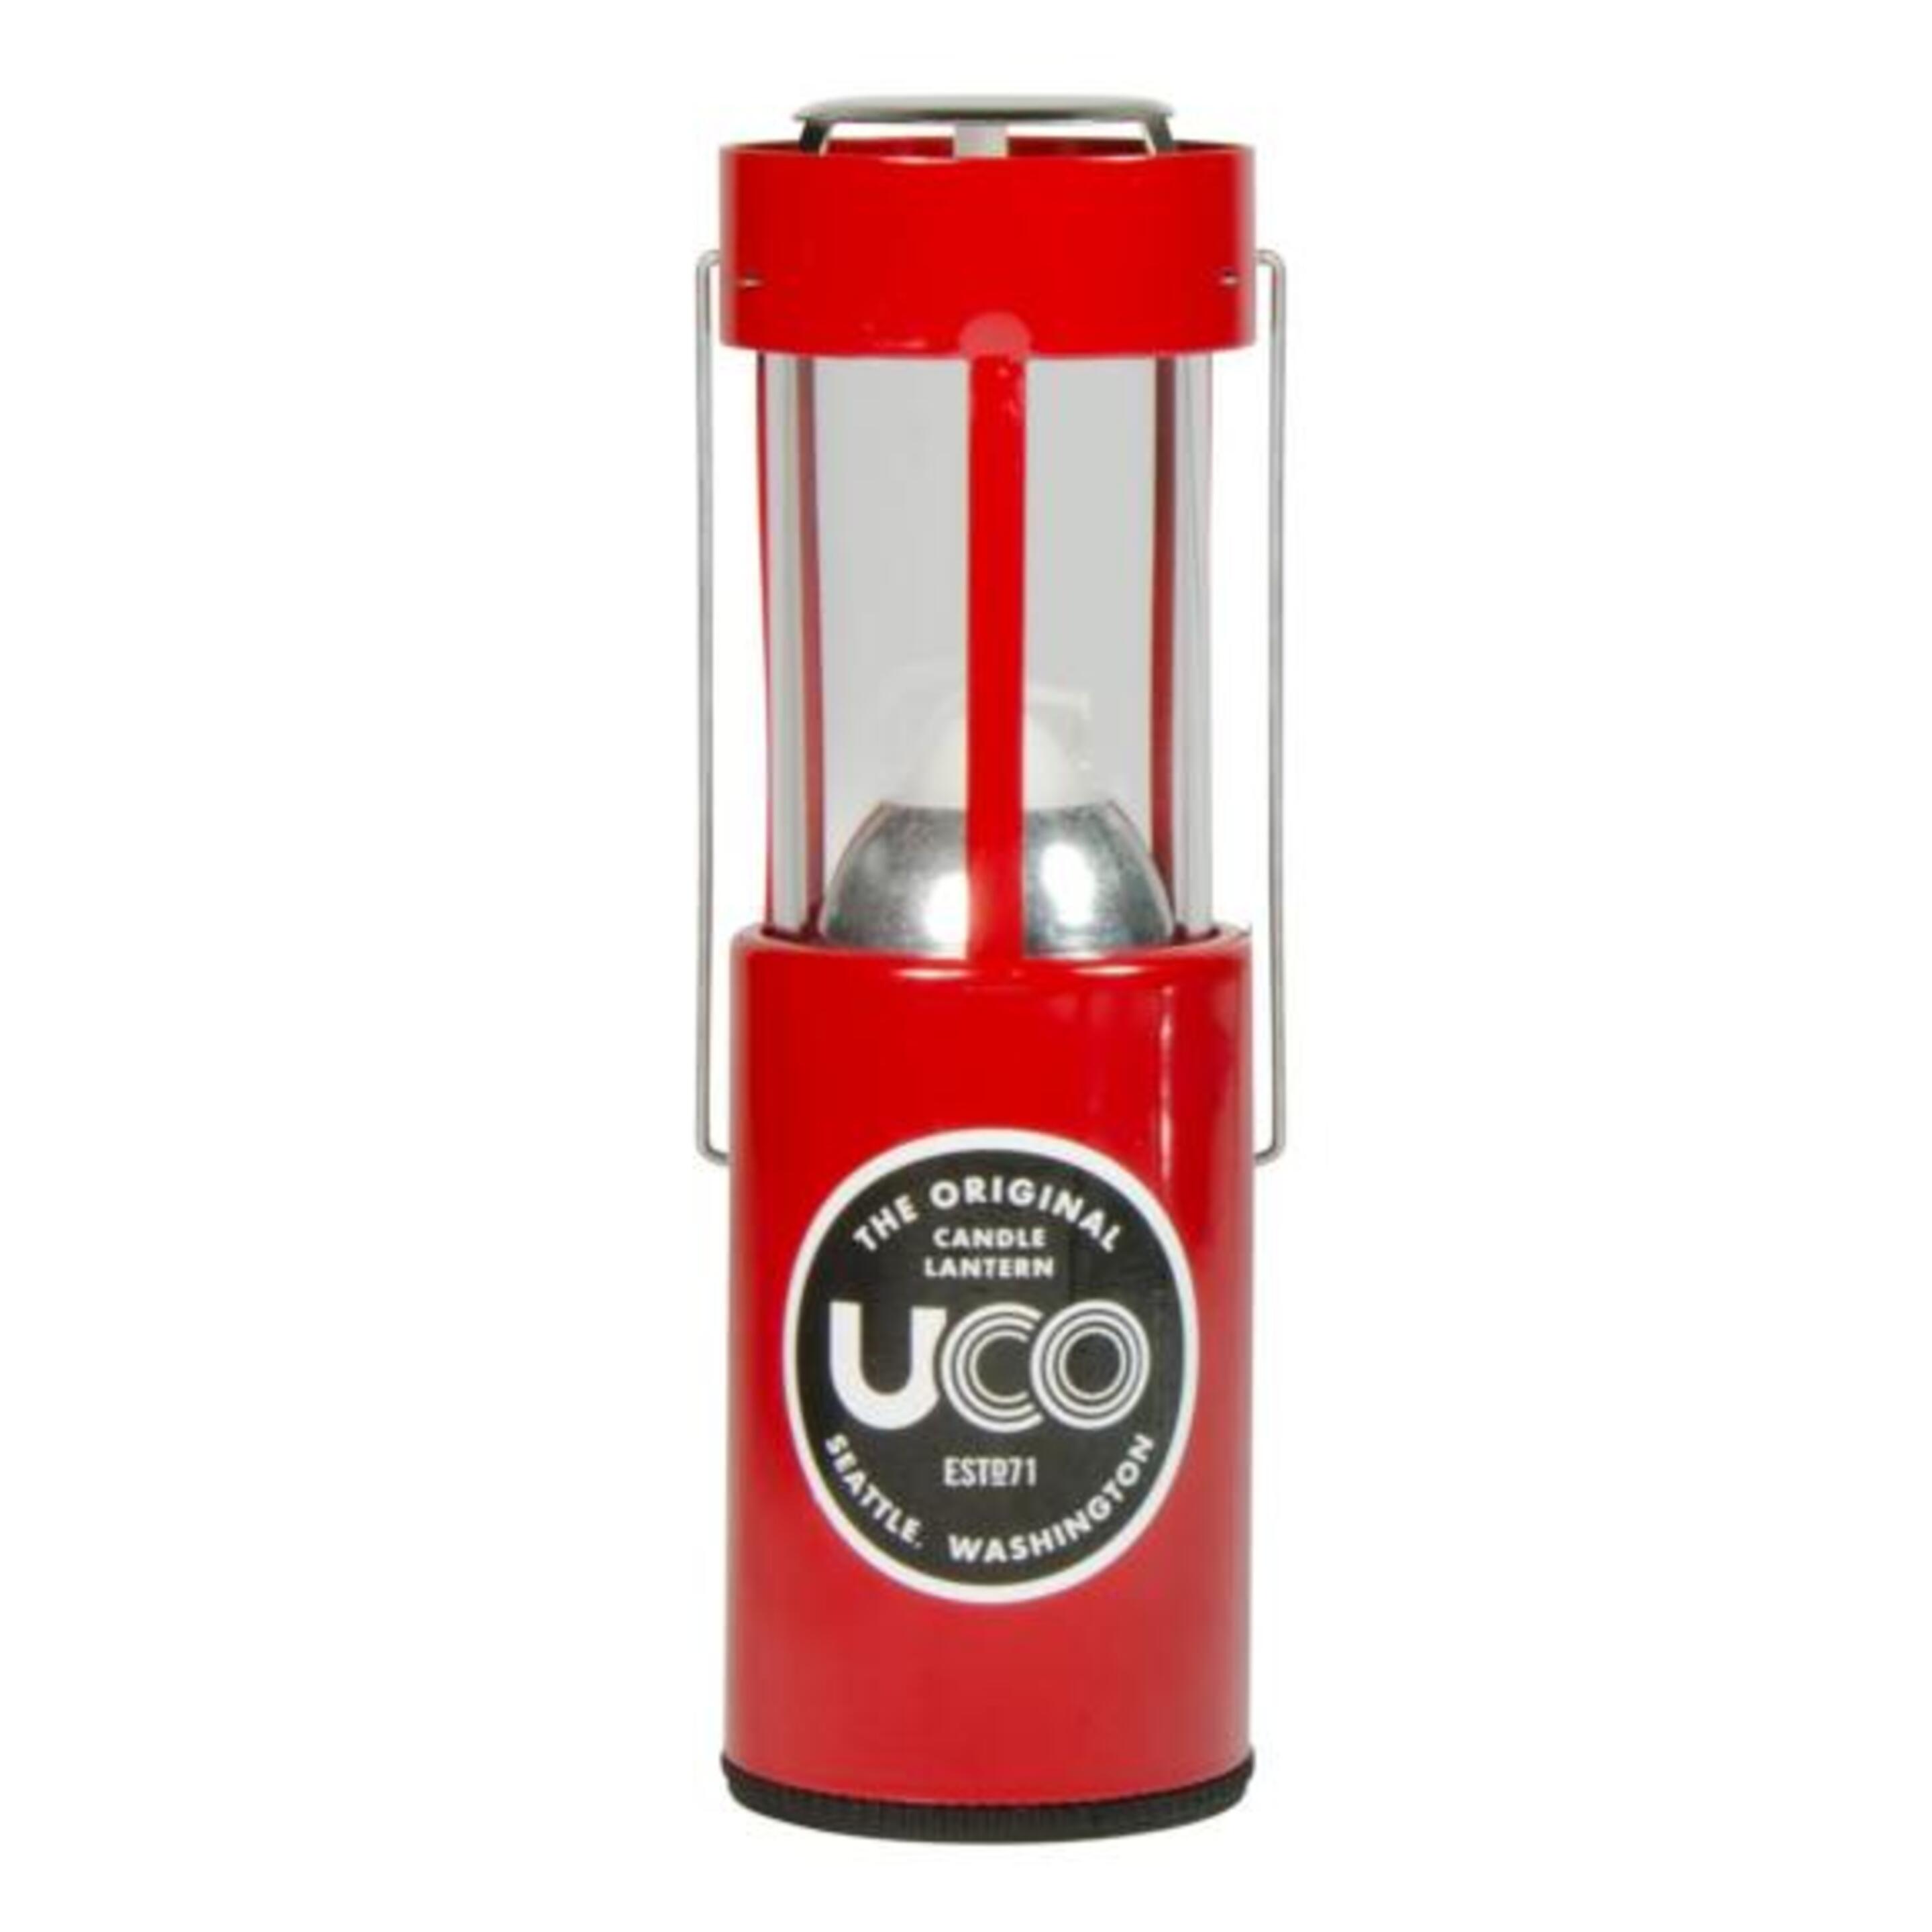 Lanterna Original Uco Long Lasting Lanternas Com Vela - Vermelho | Sport Zone MKP